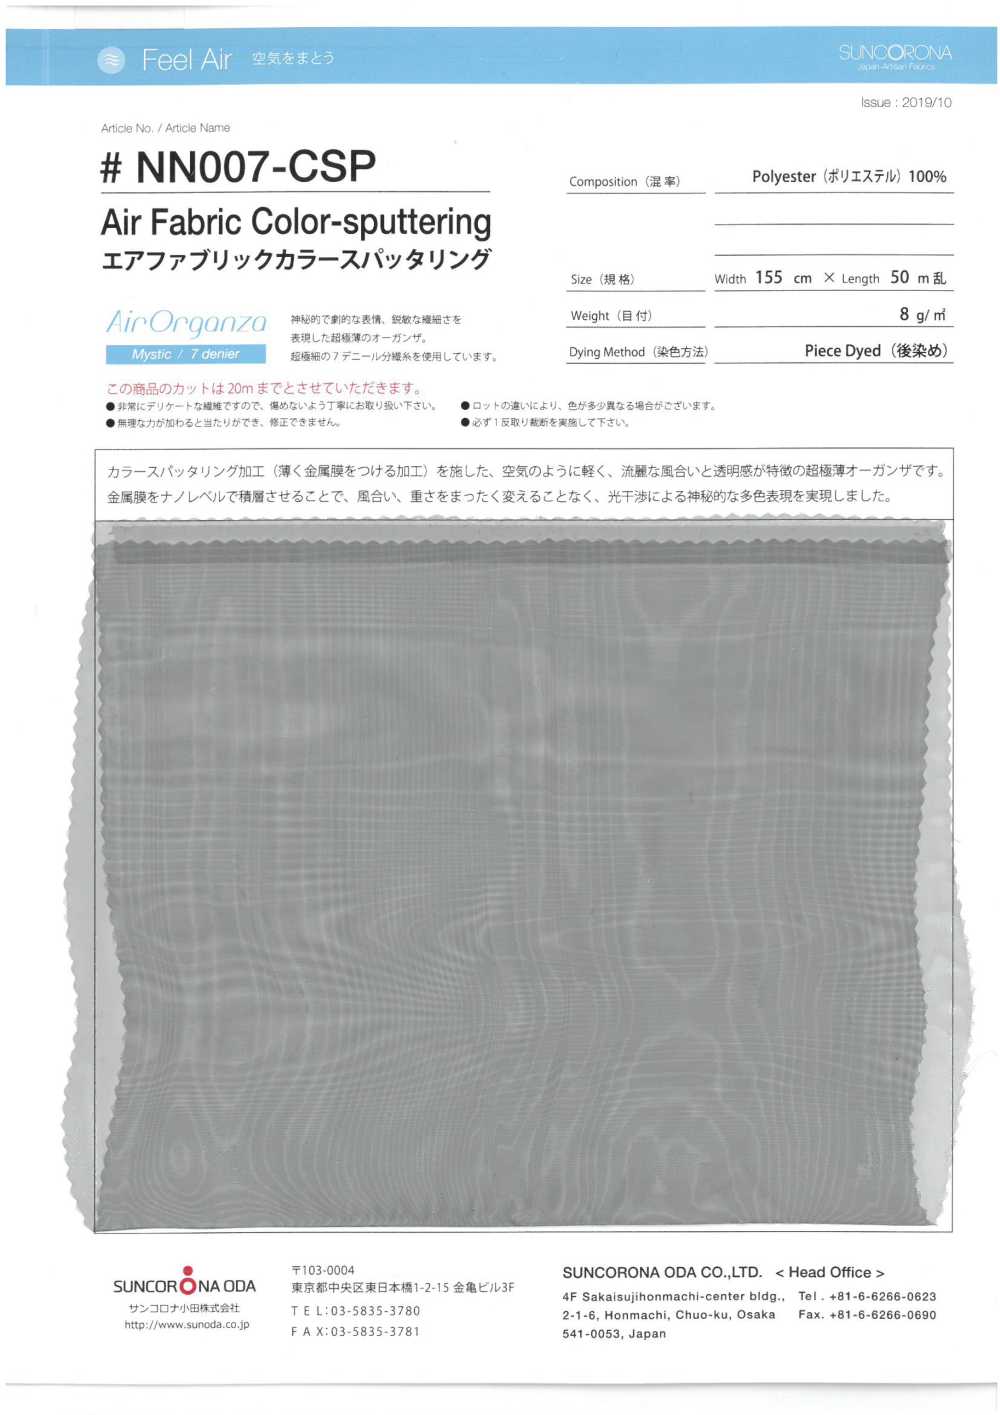 NN007-CSP 空氣織物彩色濺射[面料] Sankorona小田